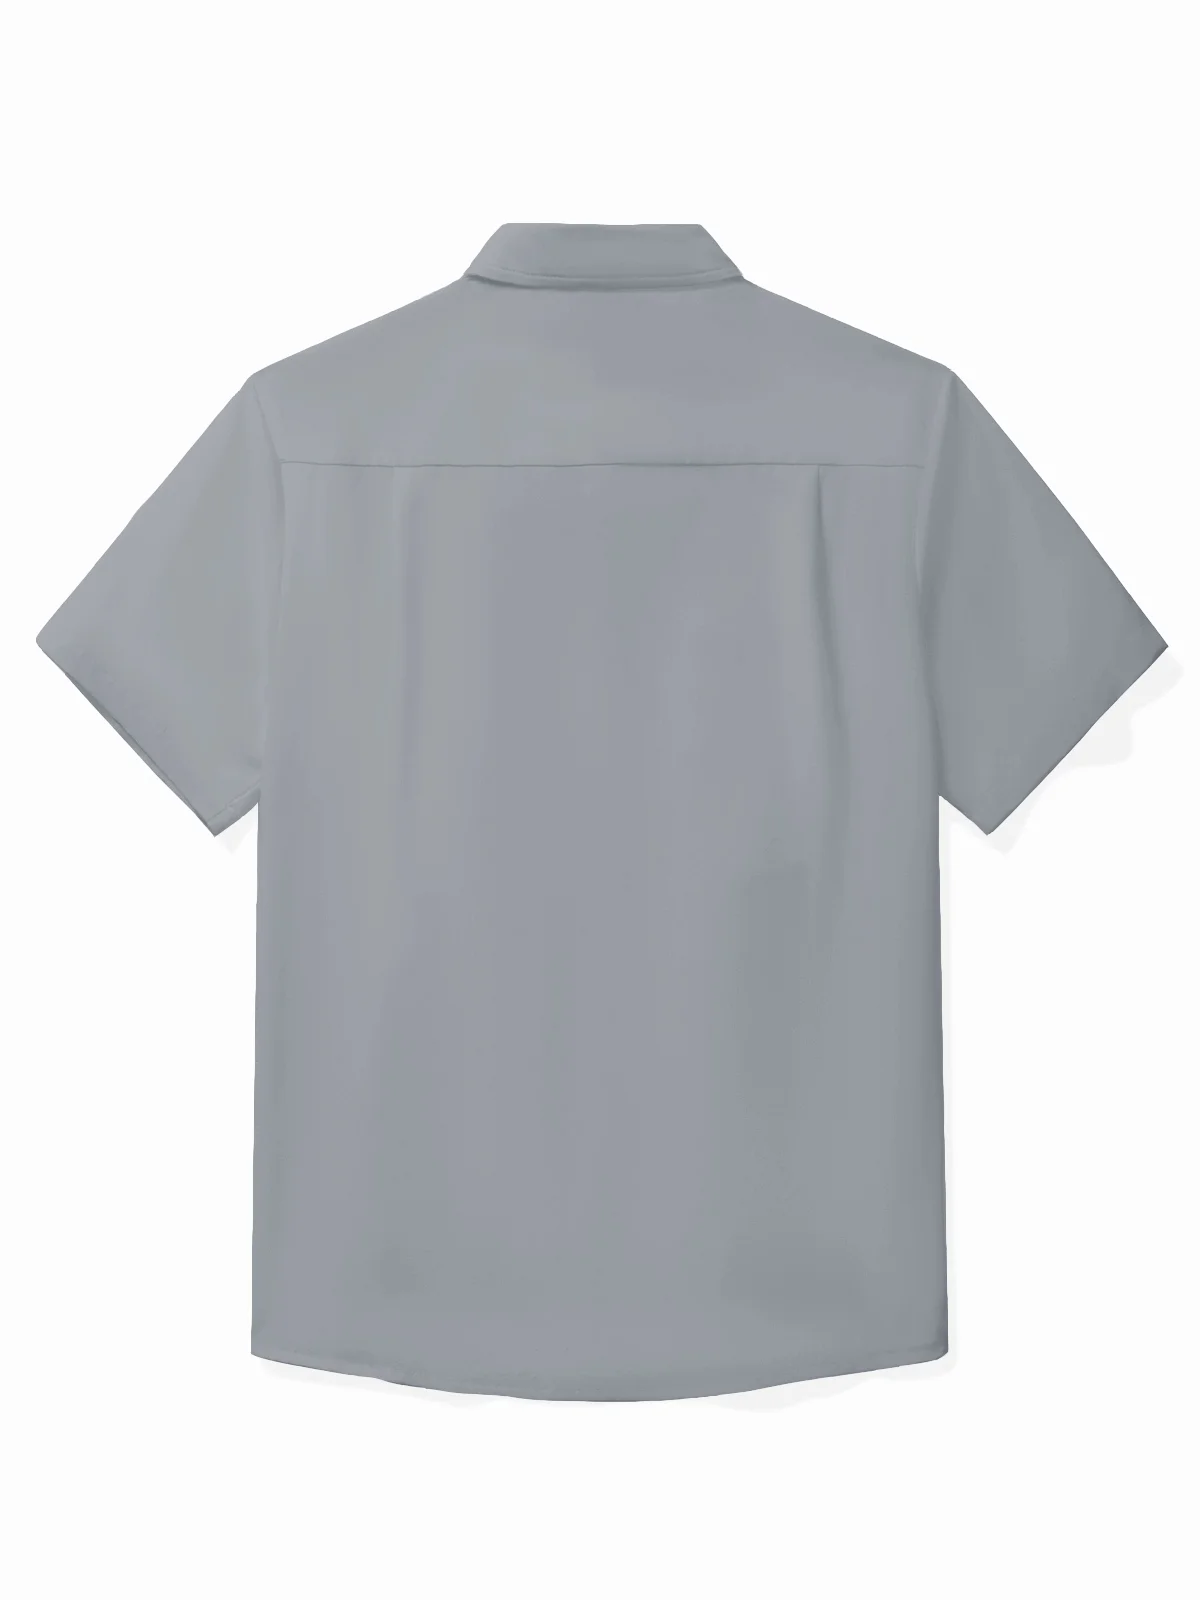 Royaura® Holiday Memorial Day Men's American Flag Soldier Print Bowling Shirt Easy Care Camping Pocket Shirt Big Tall